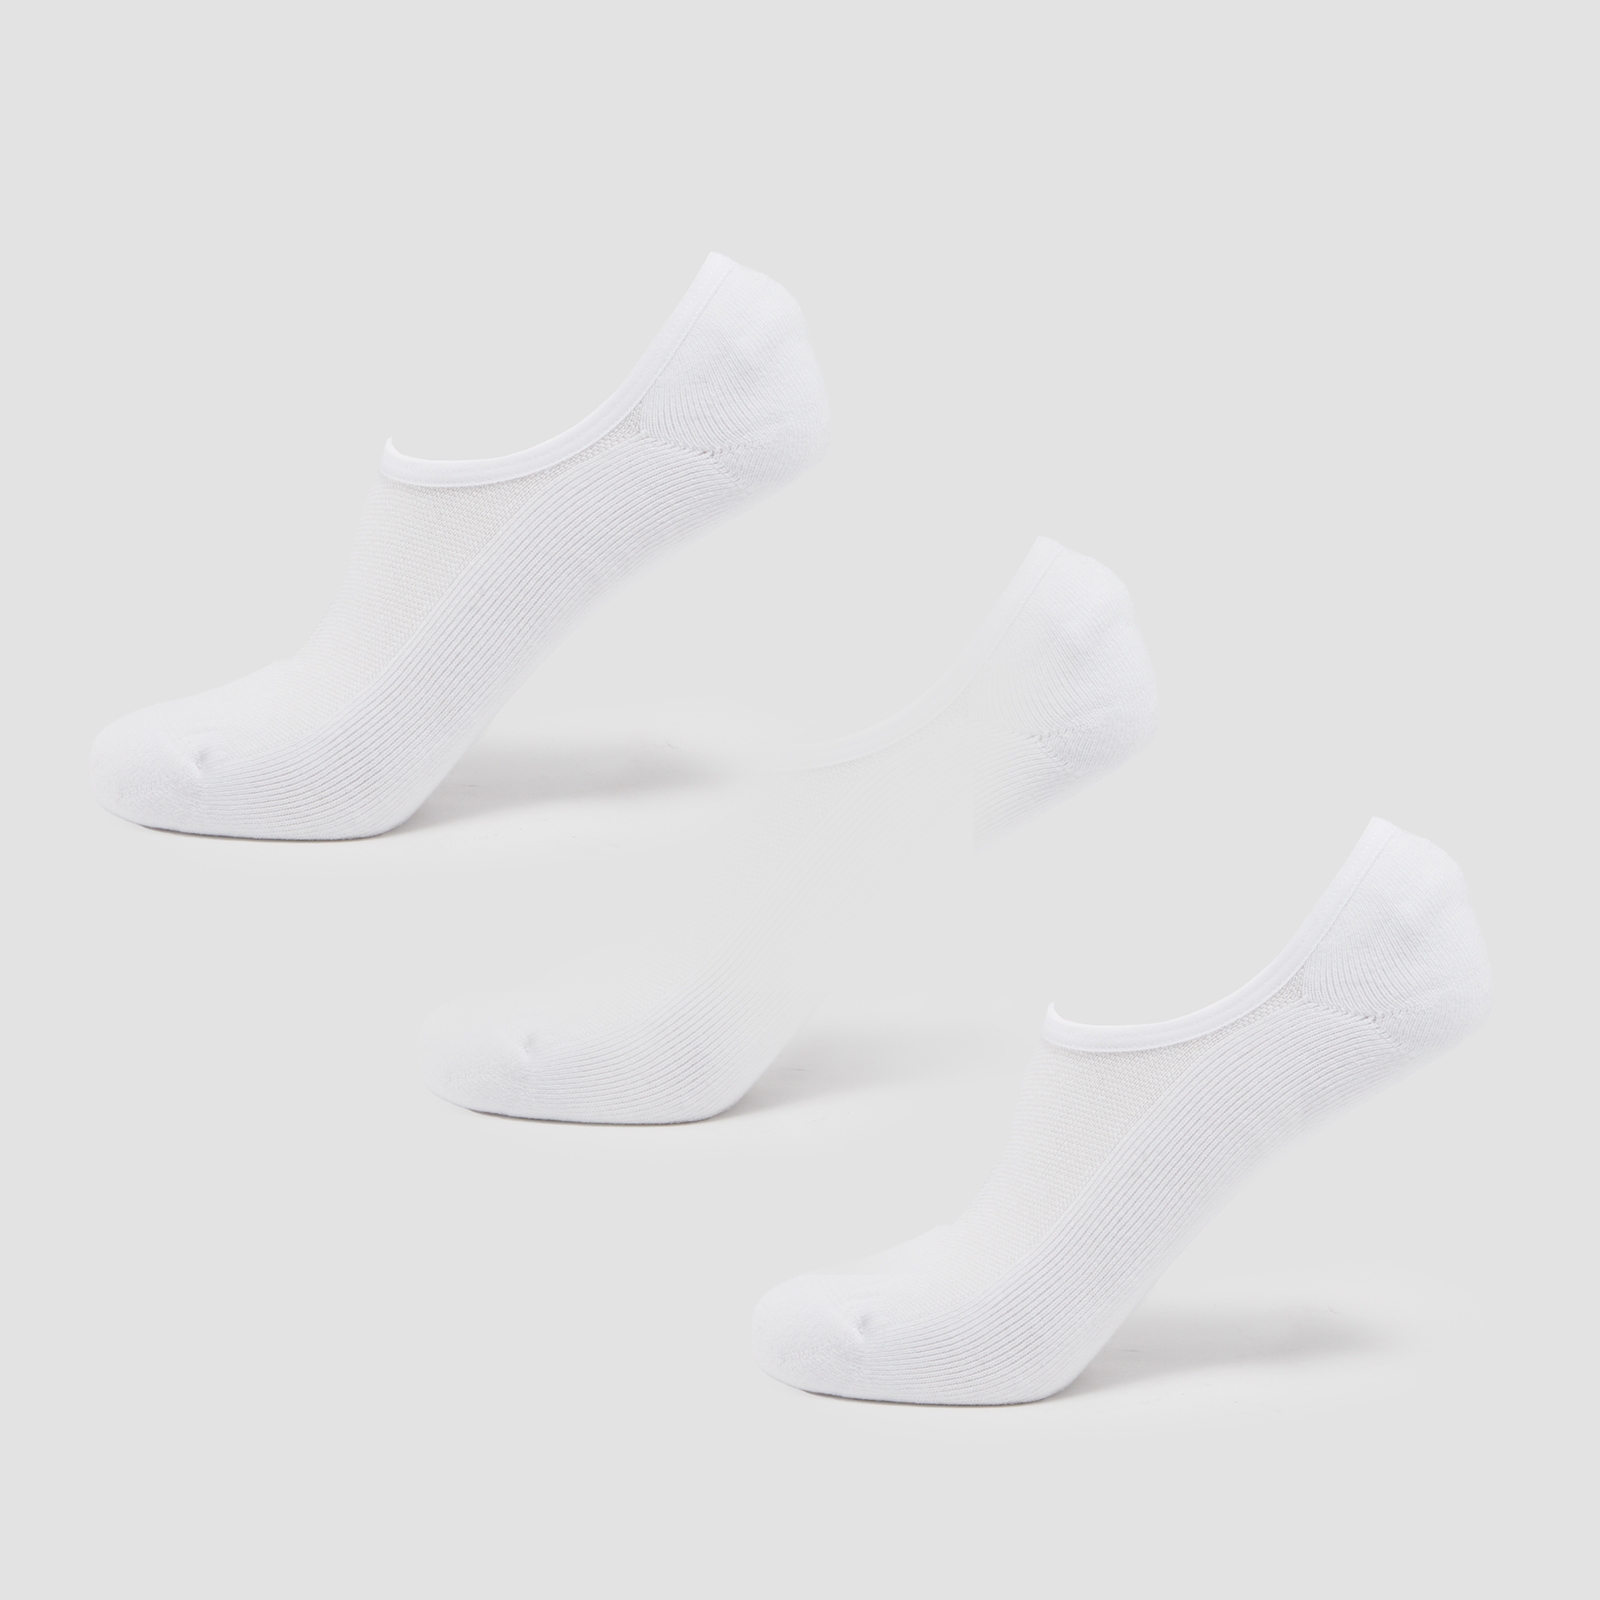 Image of MP Unisex Invisible Socks (3 Pack) - White - UK 12-14